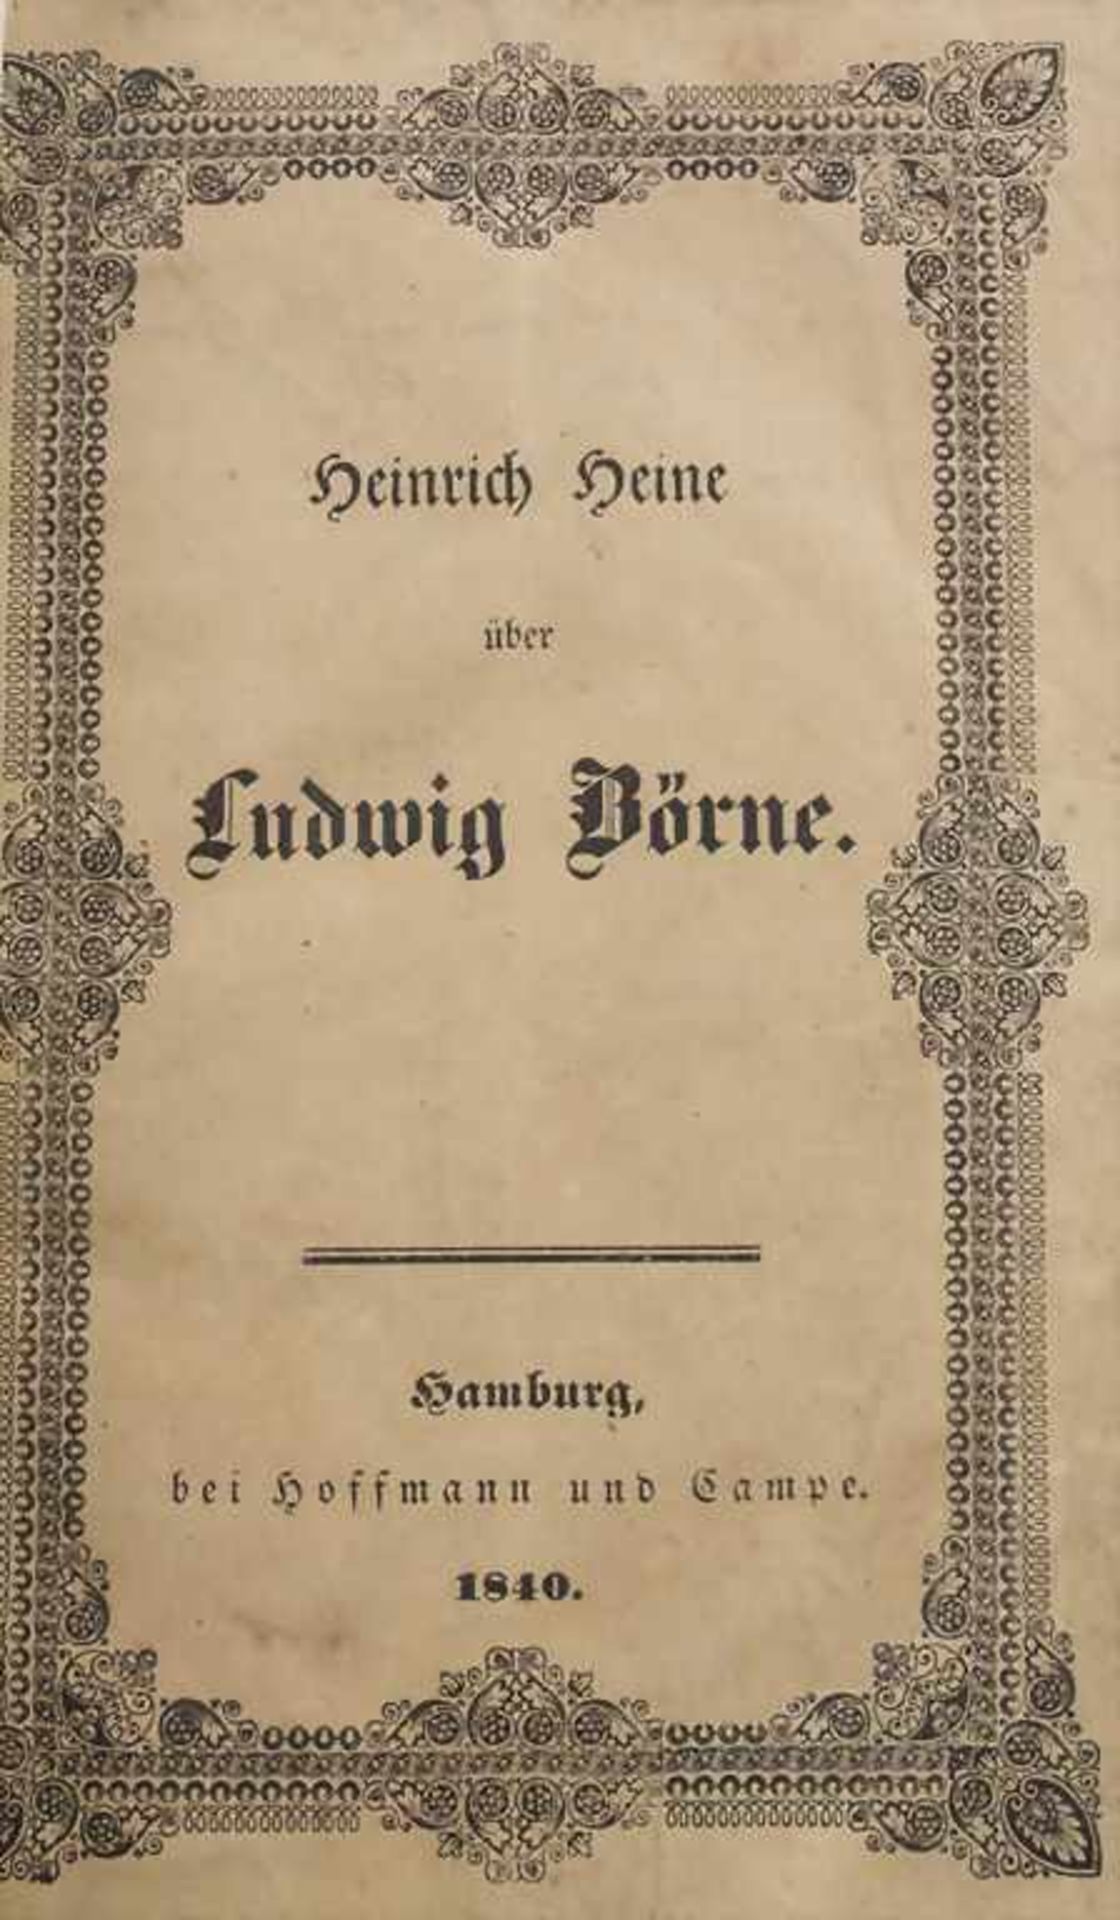 Heinrich Heine: Über Ludwig Börne, Hamburg, 1840 - Image 2 of 2